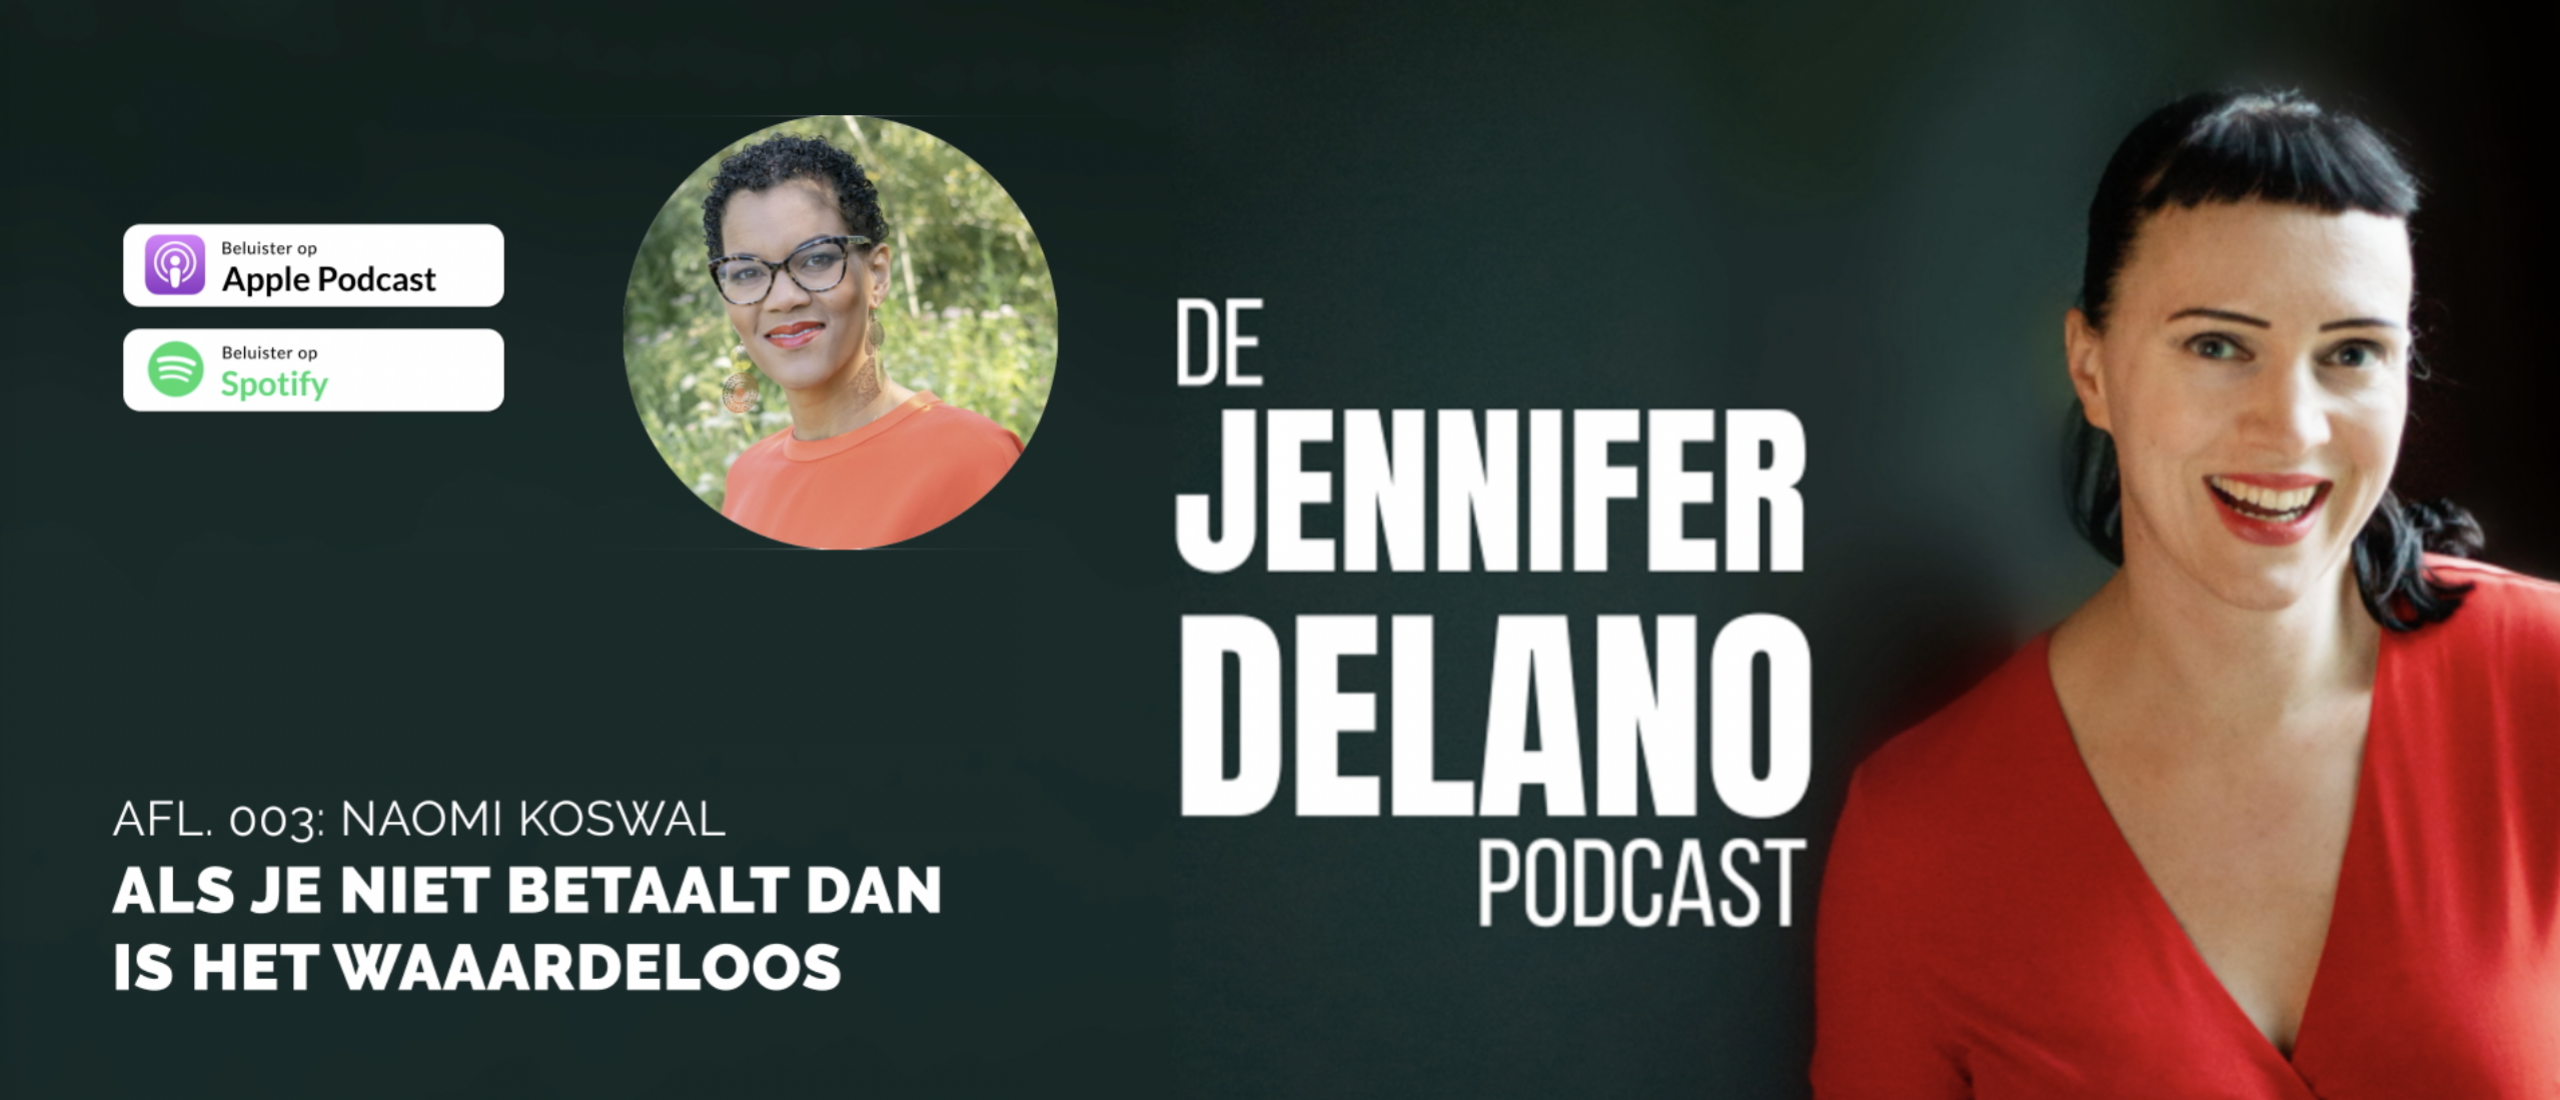 “Als je niet betaalt dan is het waardeloos” - De Jennifer Delano Podcast Afl. 003 met Naomi Koswal